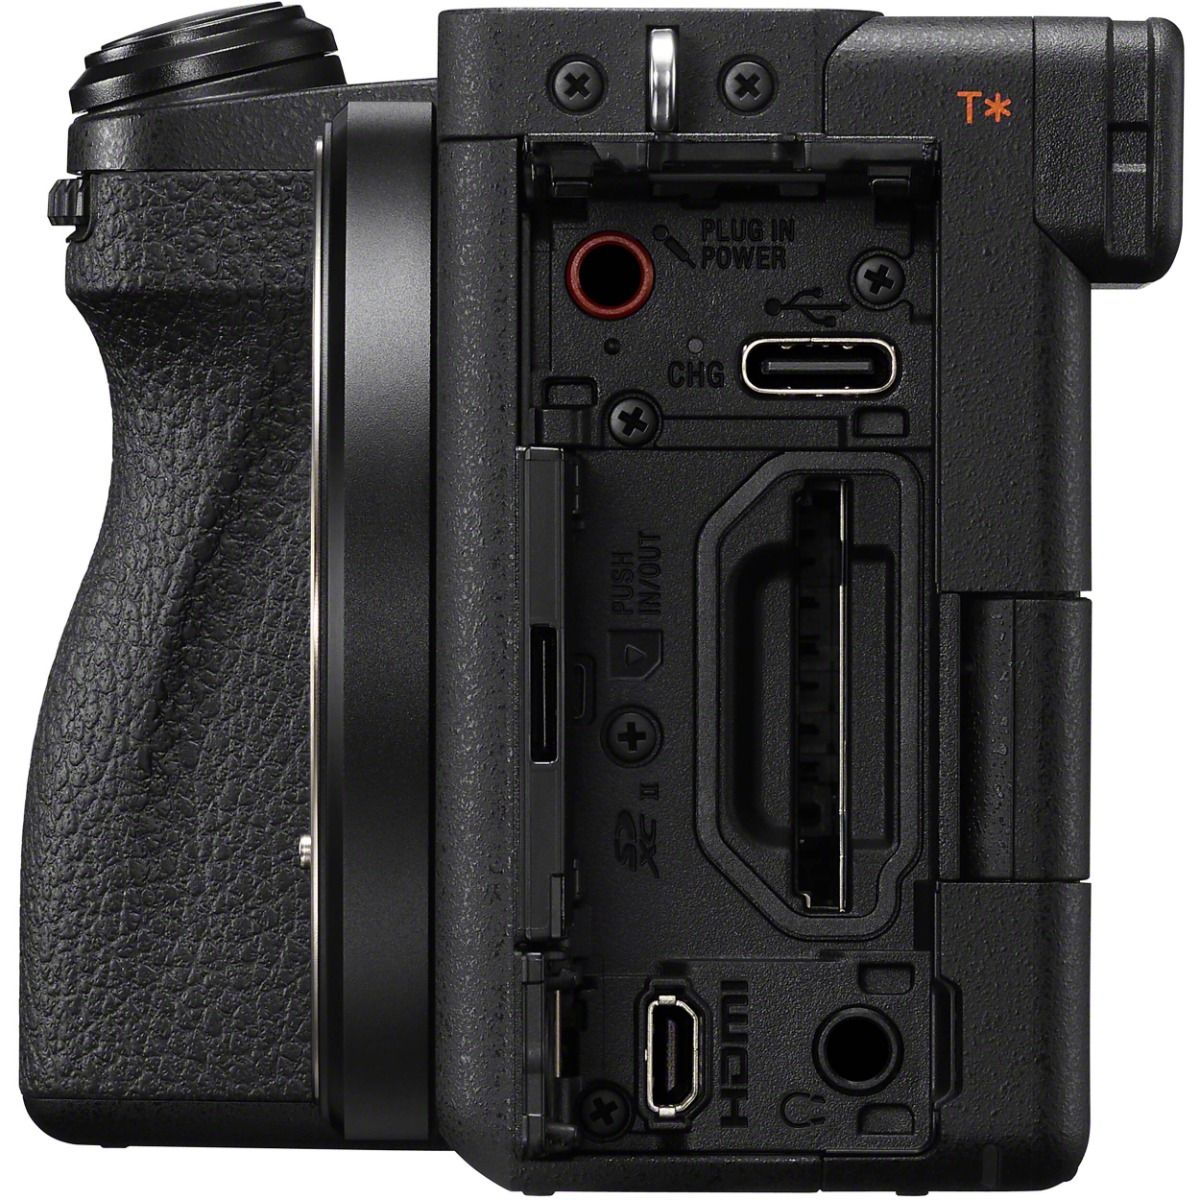 Sony A6400, así es la nueva cámara con IA y seguimiento de objetivos